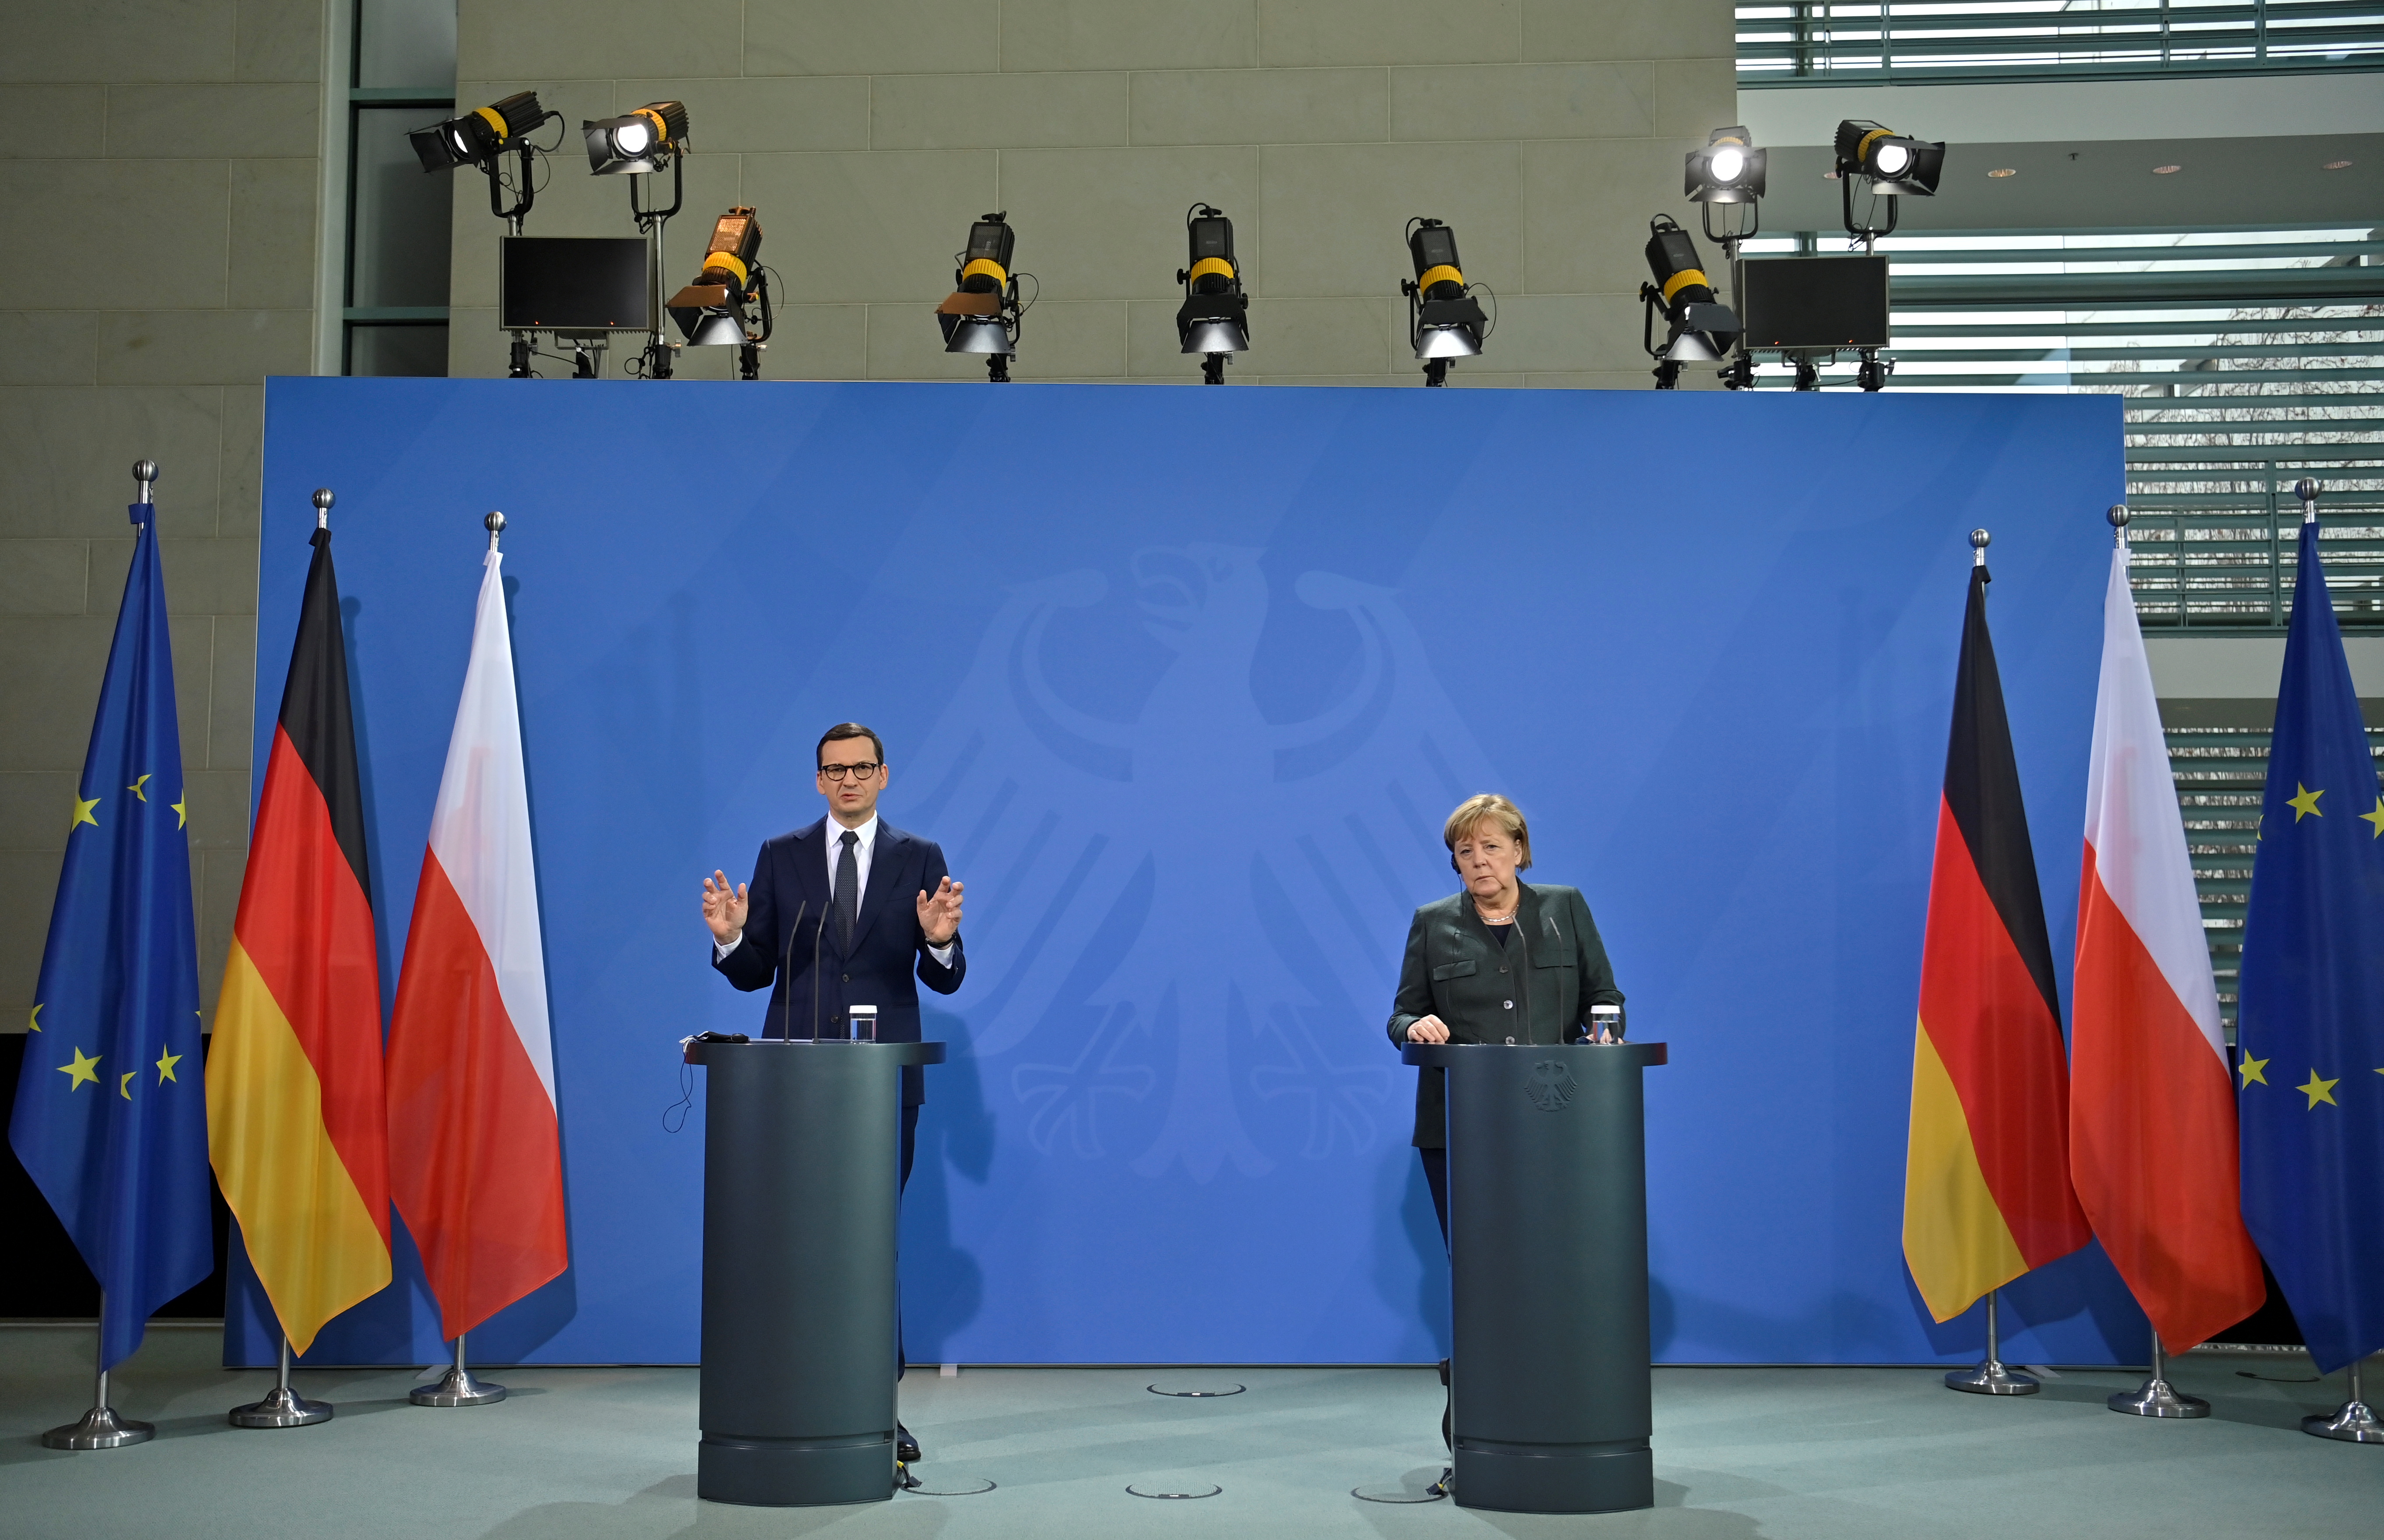 German Chancellor Merkel and Polish PM Morawiecki speak to reporters in Berlin